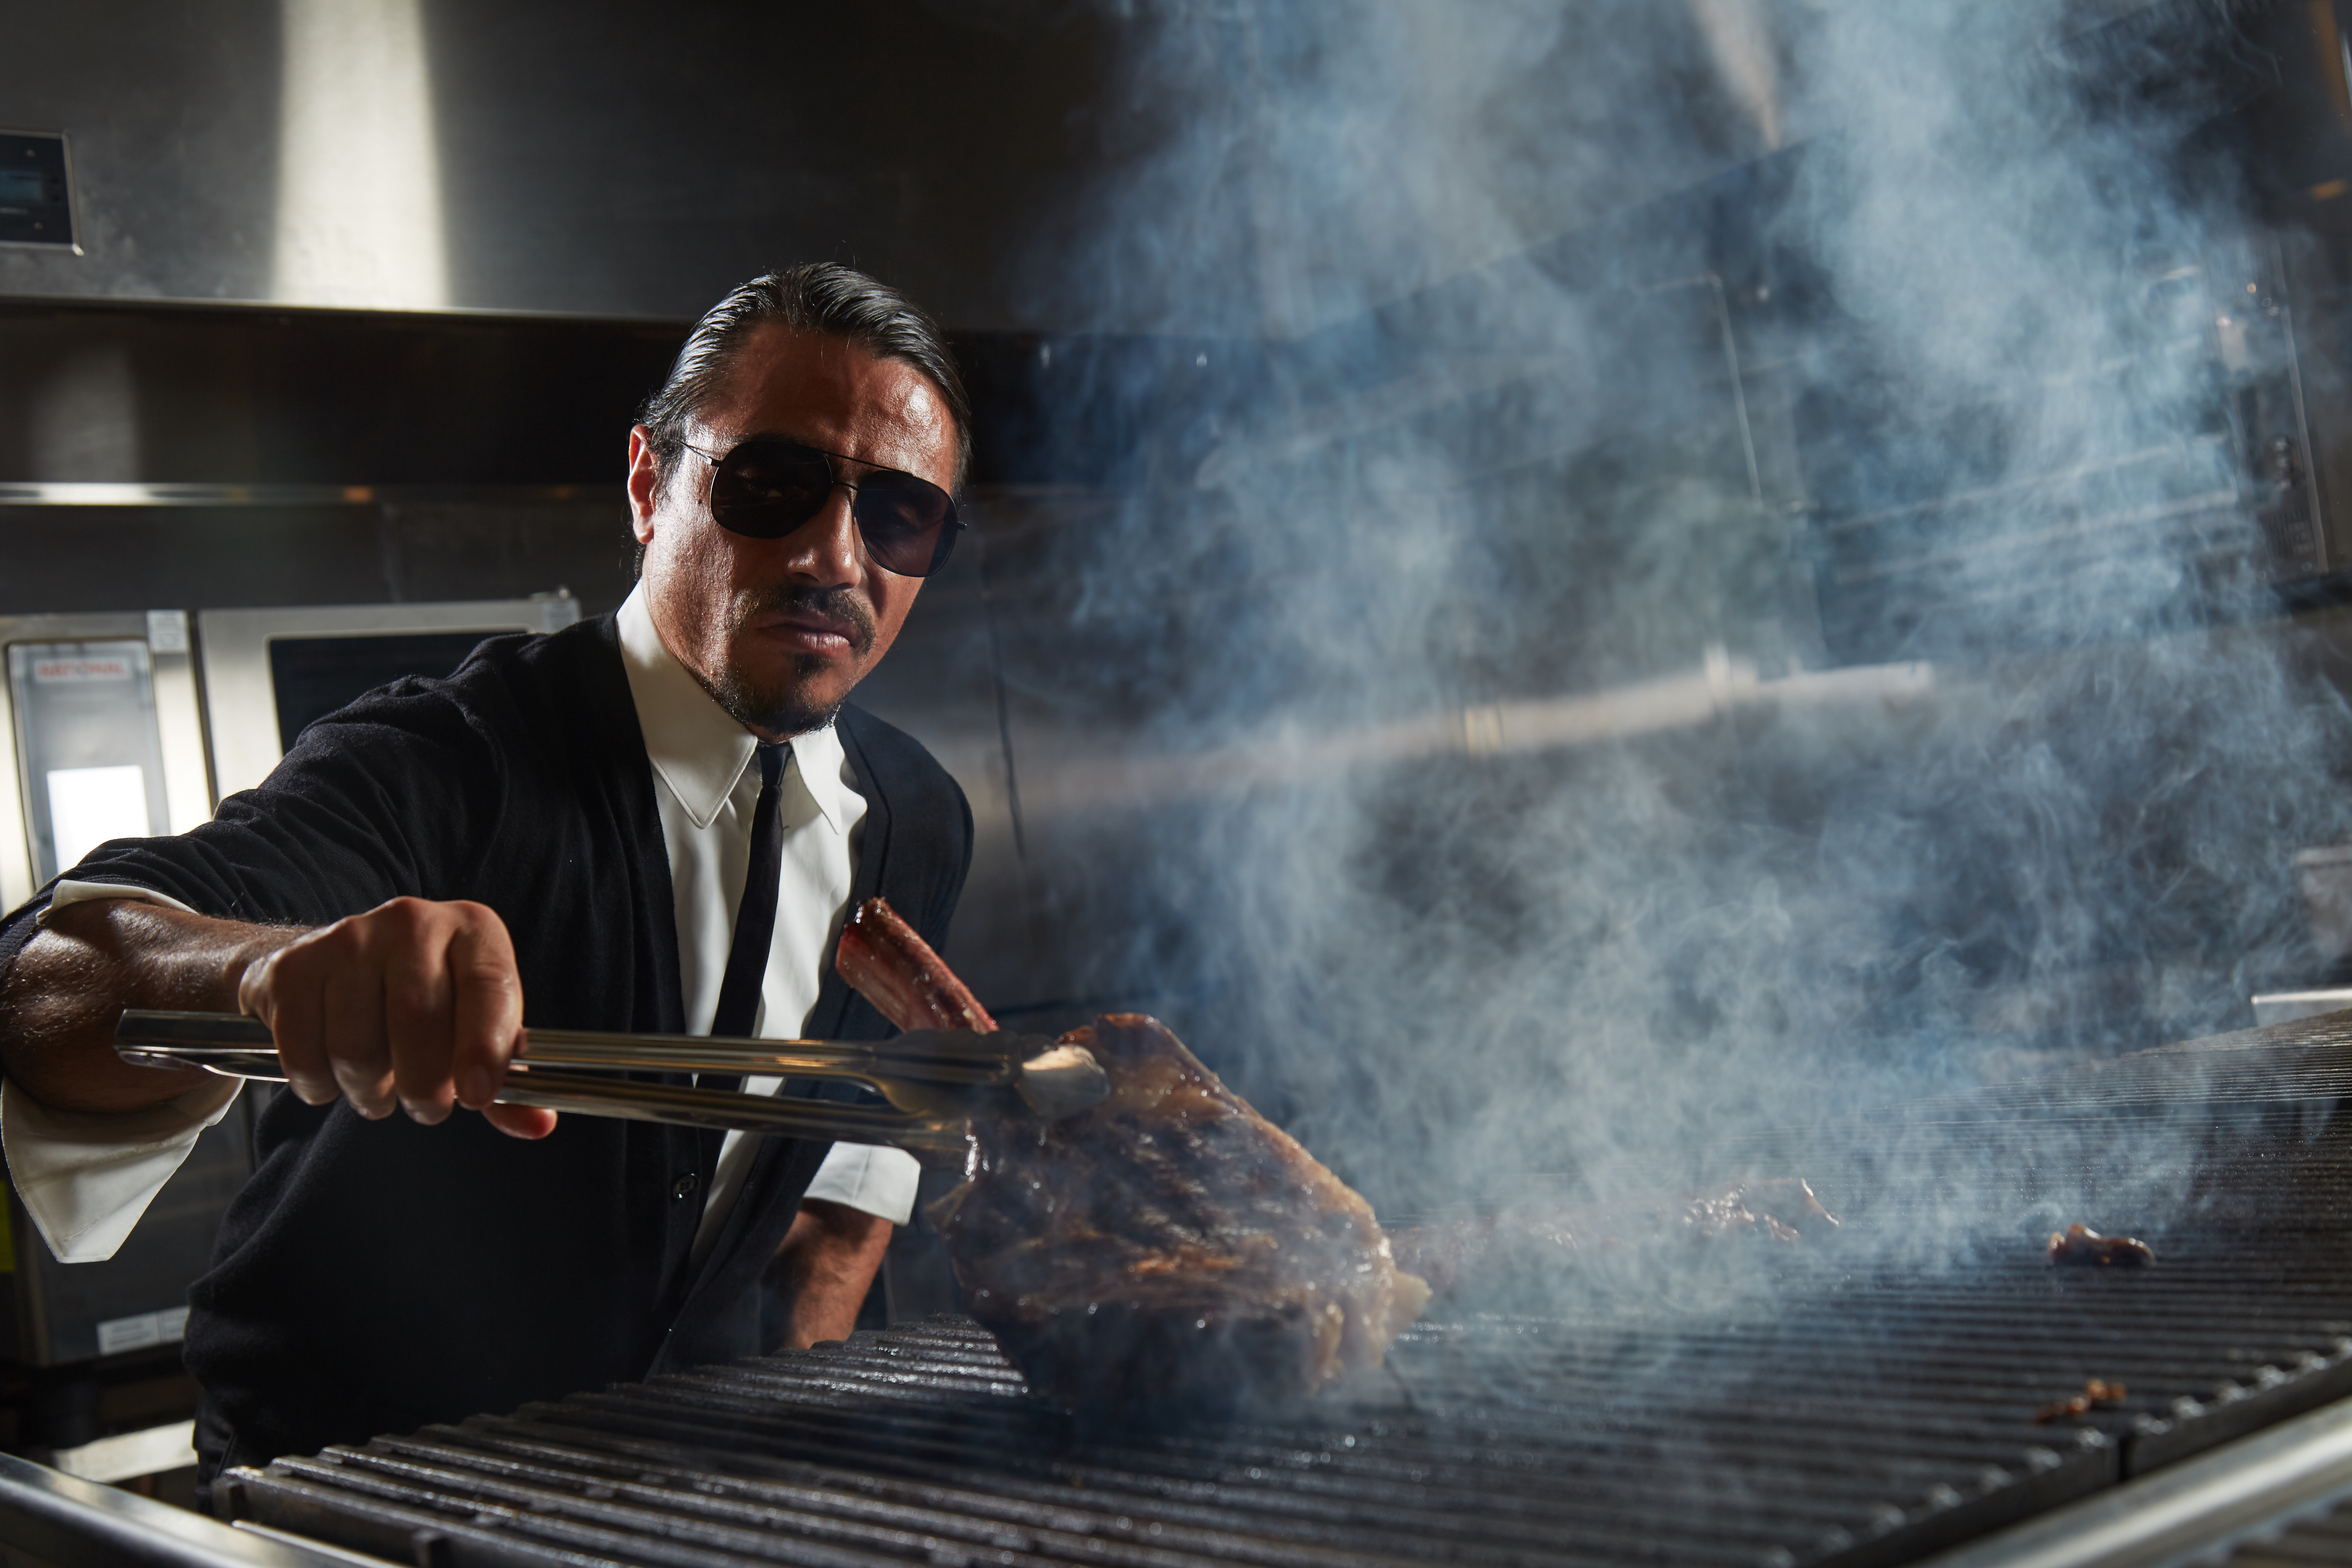 Salt Bae, standing over a grill, wielding a tomahawk steak.